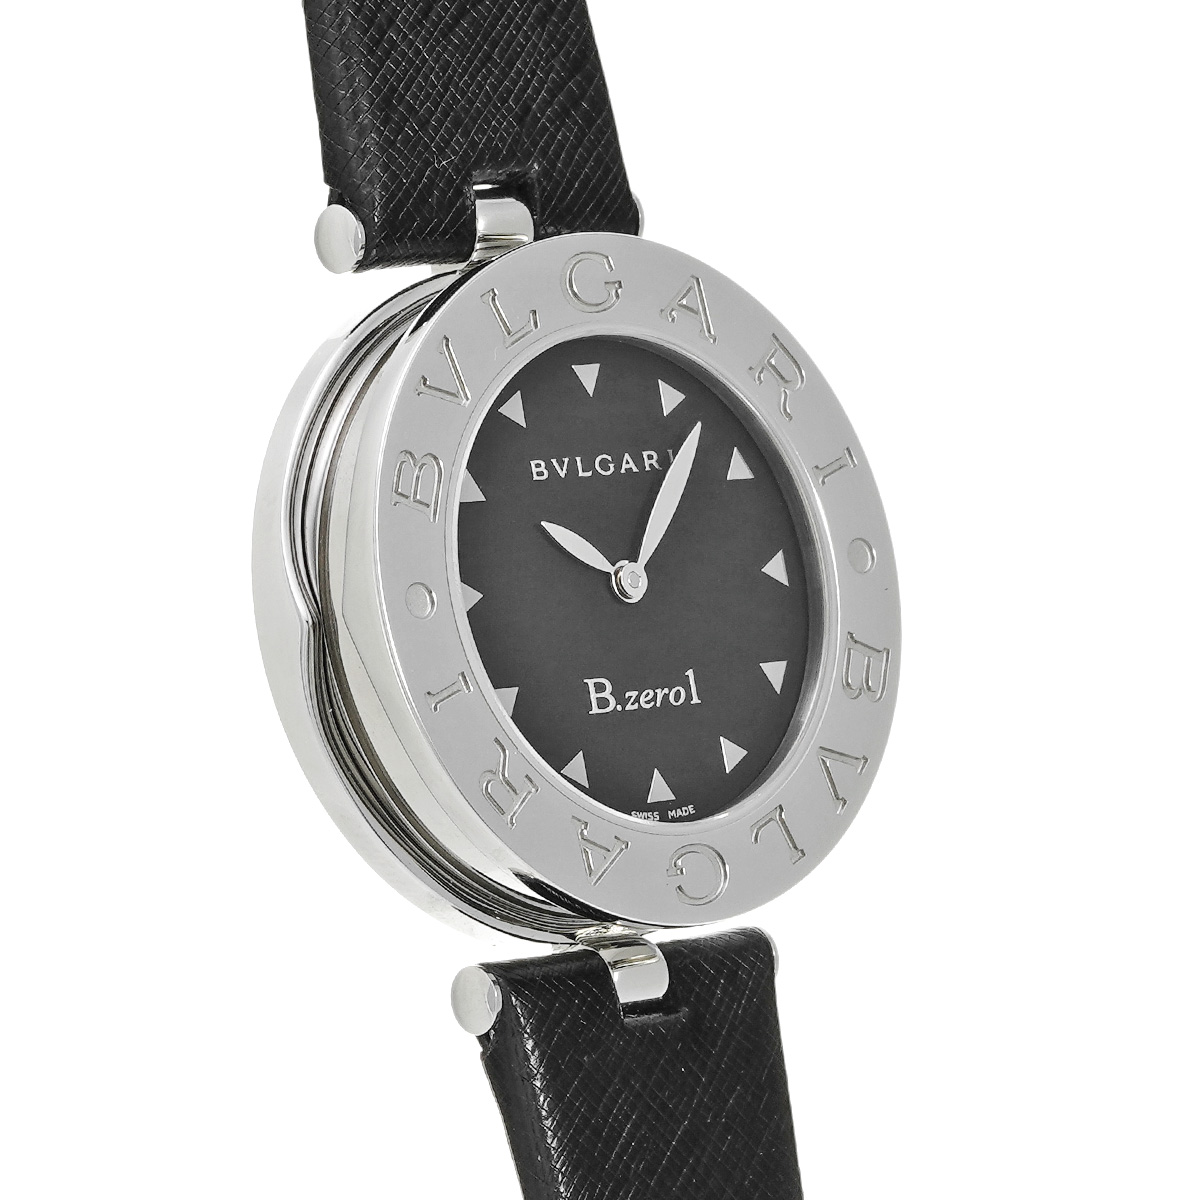 BVLGARI ビーゼロワン ブラック腕時計